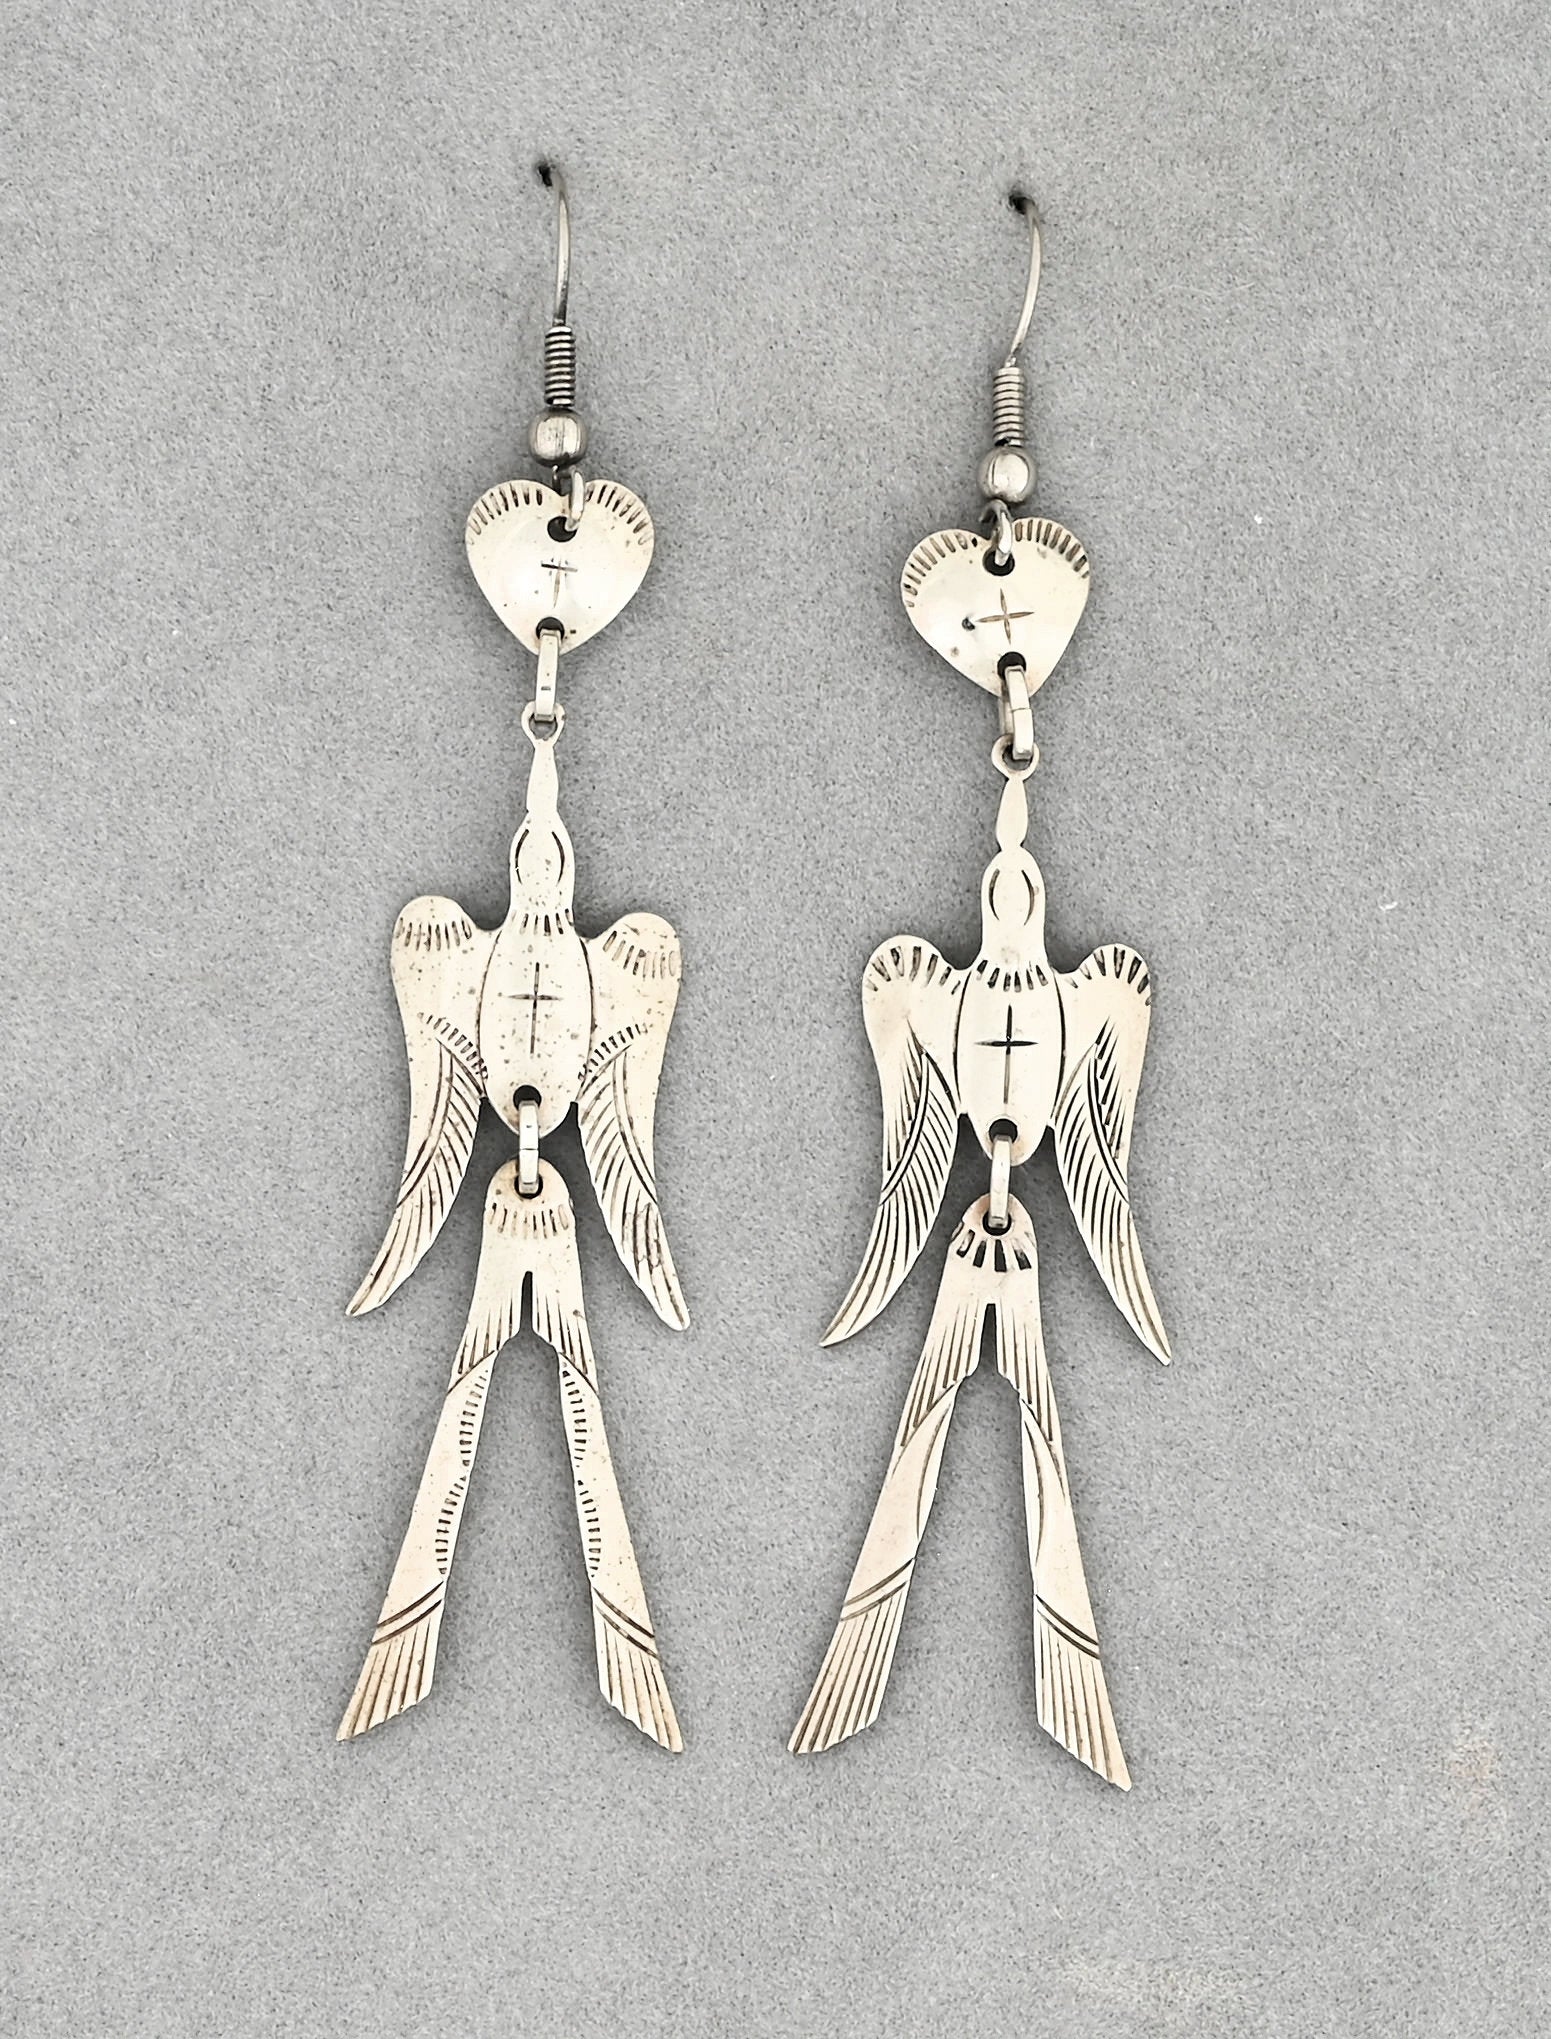 Peyote Bird Earrings by Bruce Caesar